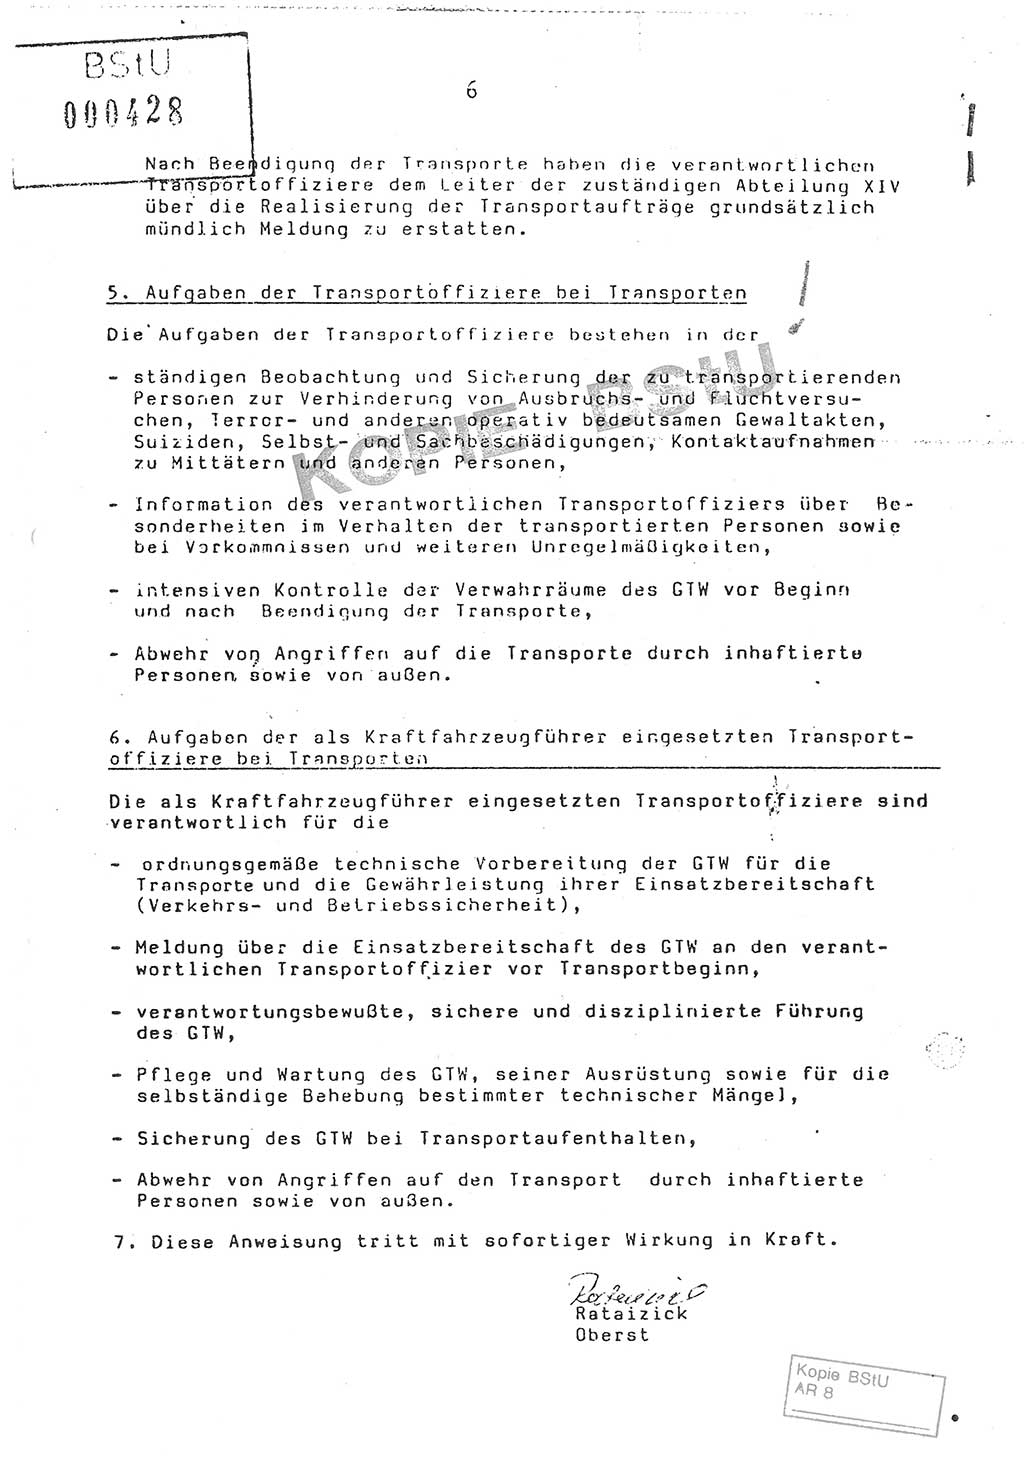 Anweisung Nr. 4/86 zur Sicherung der Transporte Inhaftierter durch Angehörige der Abteilungen ⅩⅣ, Transportsicherungsanweisung, Ministerium für Staatssicherheit (MfS) [Deutsche Demokratische Republik (DDR)], Abteilung ⅩⅣ, Leiter, Vertrauliche Verschlußsache (VVS) o008-18/86, Berlin, 29.1.1986, Seite 6 (Anw. 4/86 MfS DDR Abt. ⅩⅣ Ltr. VVS o008-18/86 1986, S. 6)